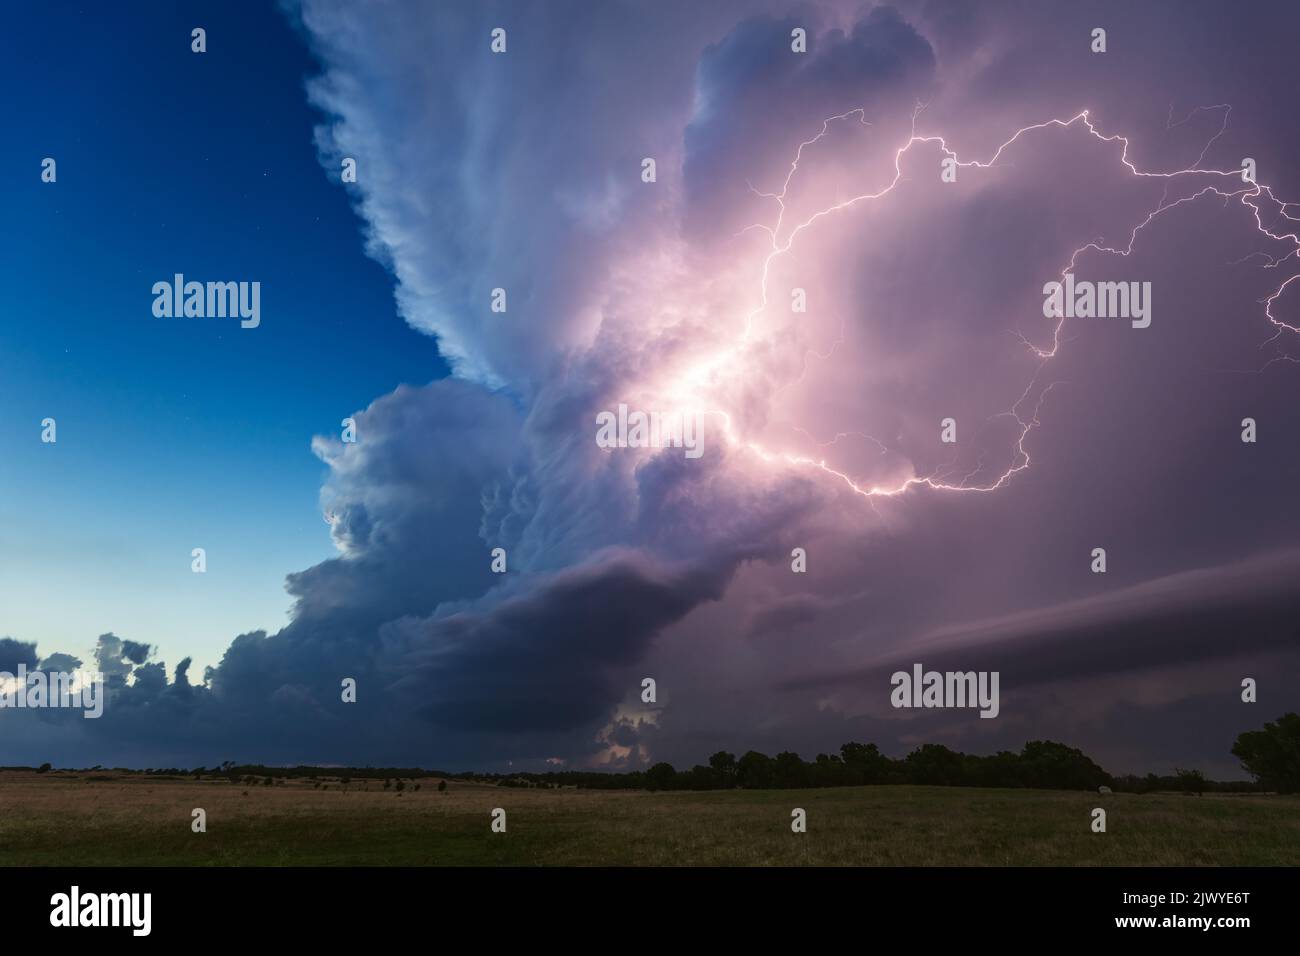 Supercell thunderstorm illuminated by lightning near Nash, Oklahoma Stock Photo